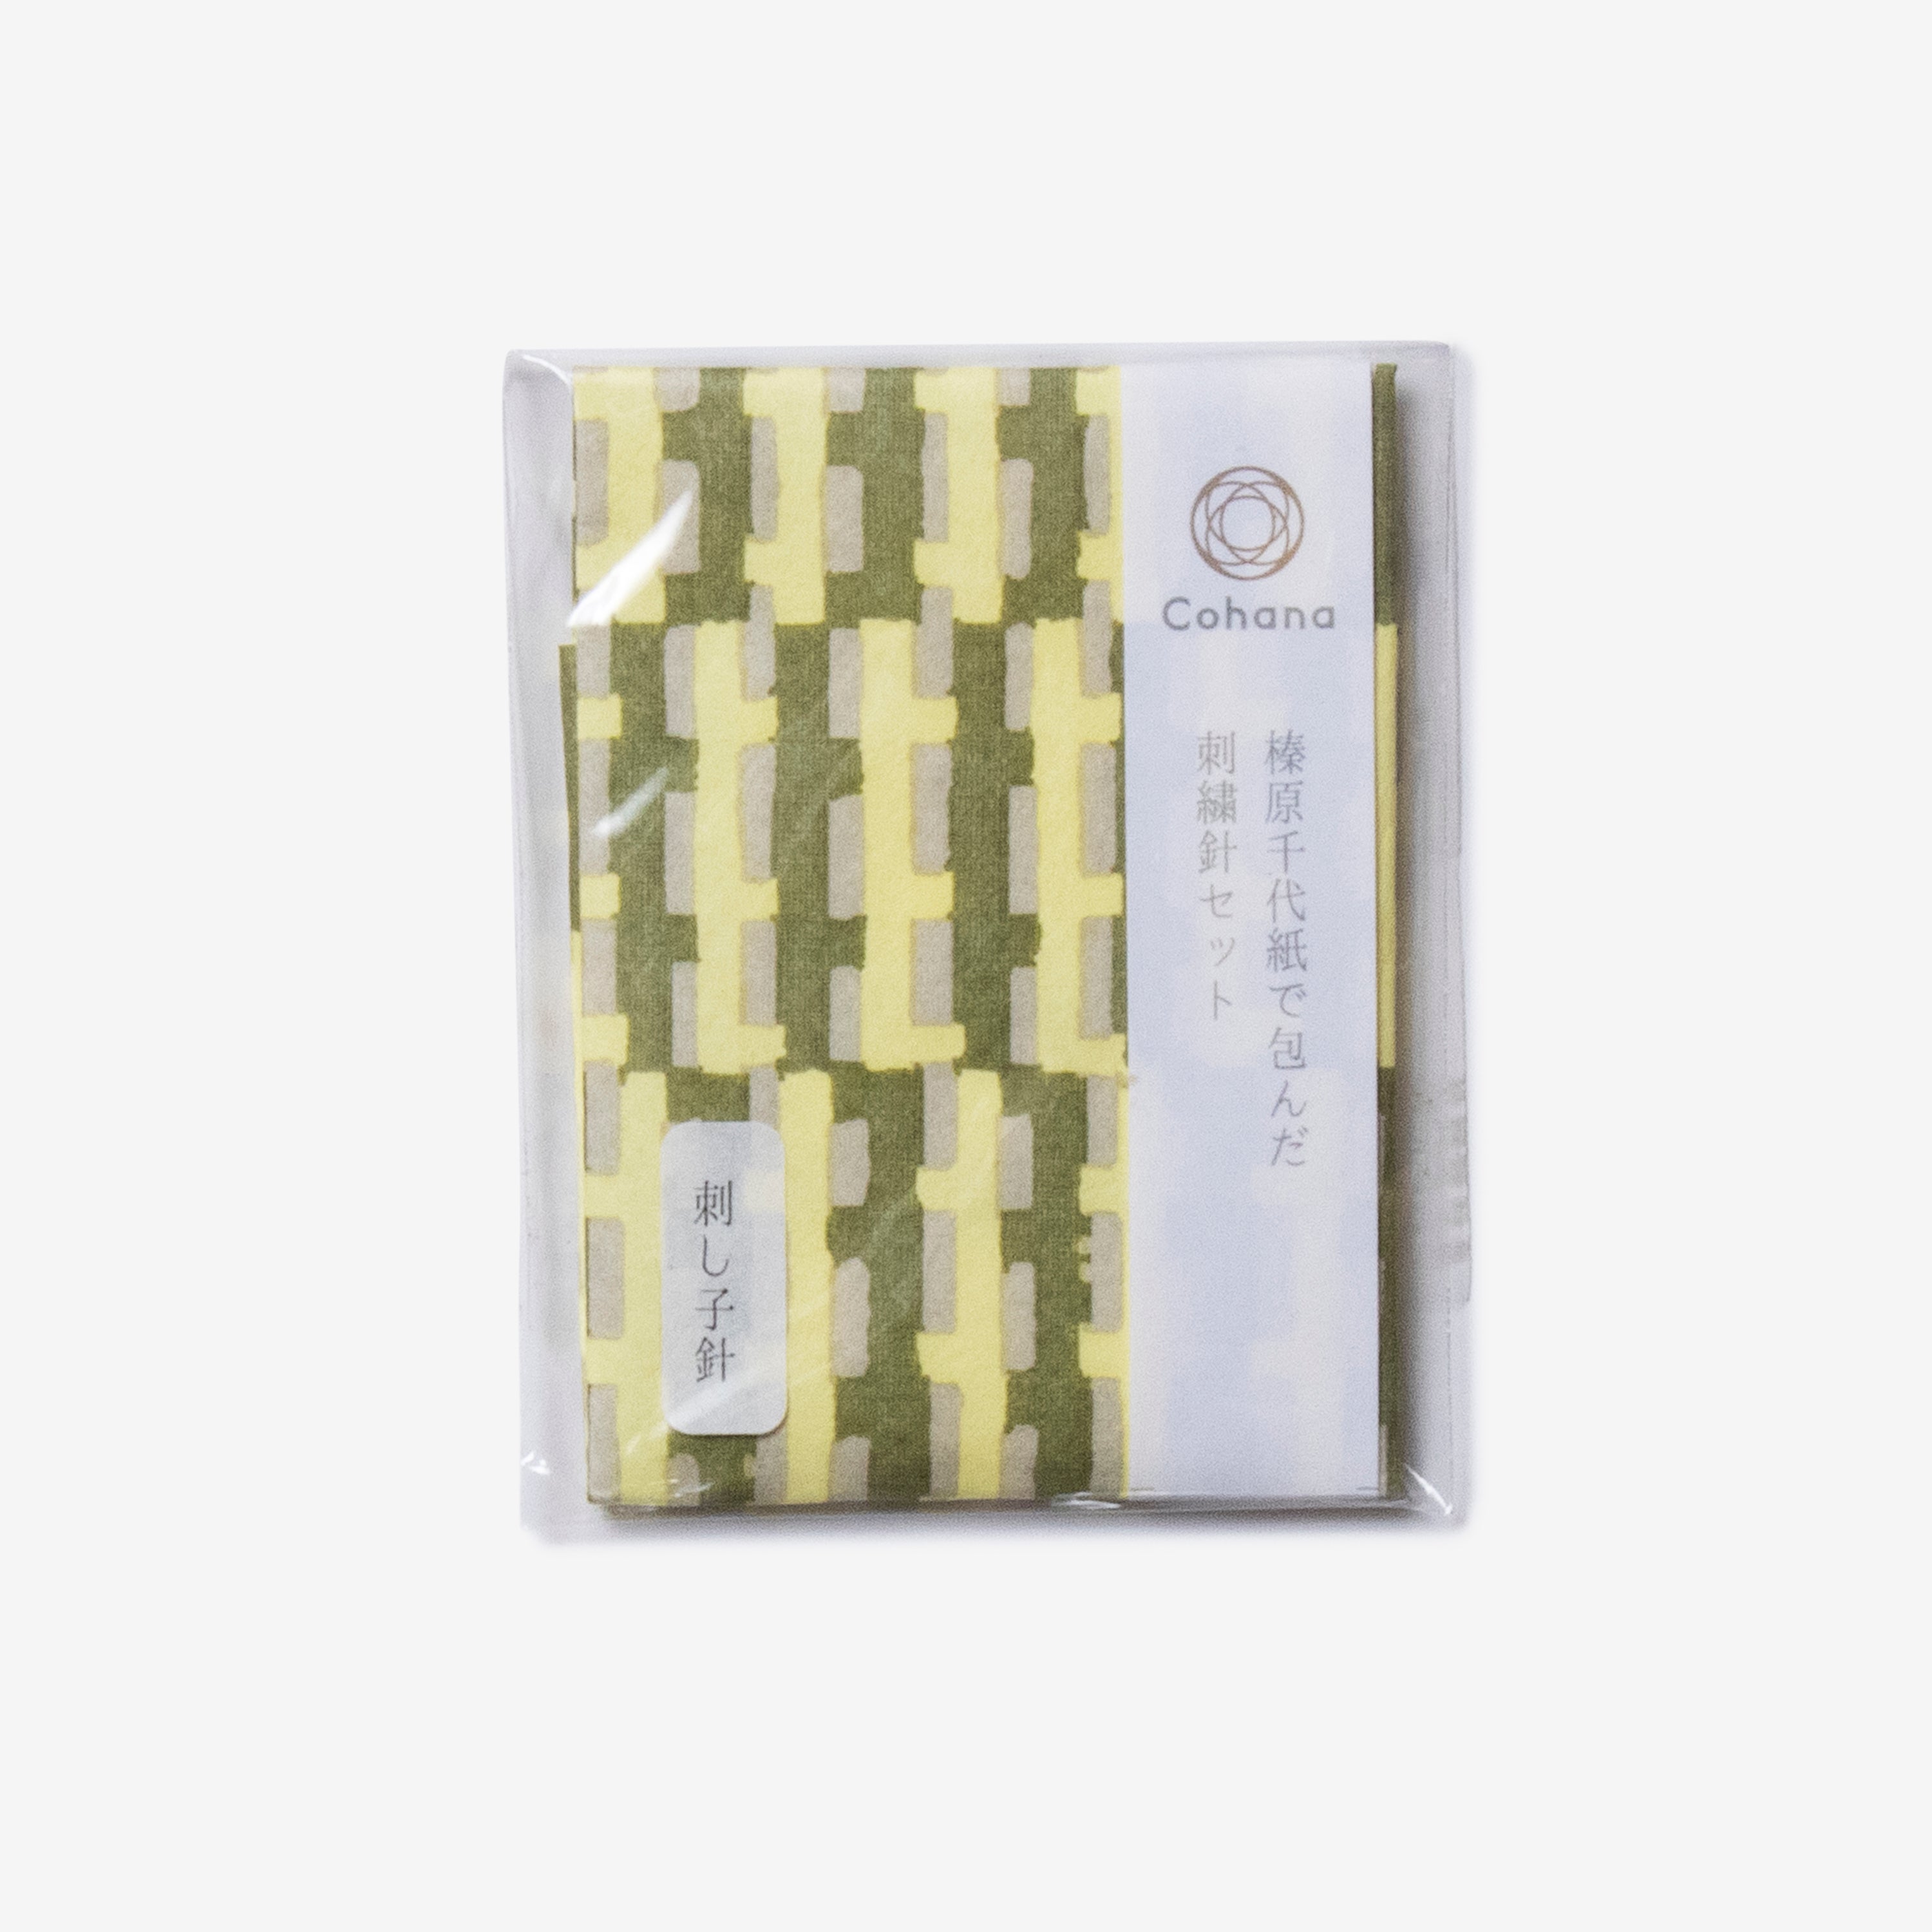 sashiko needle pack, cohana